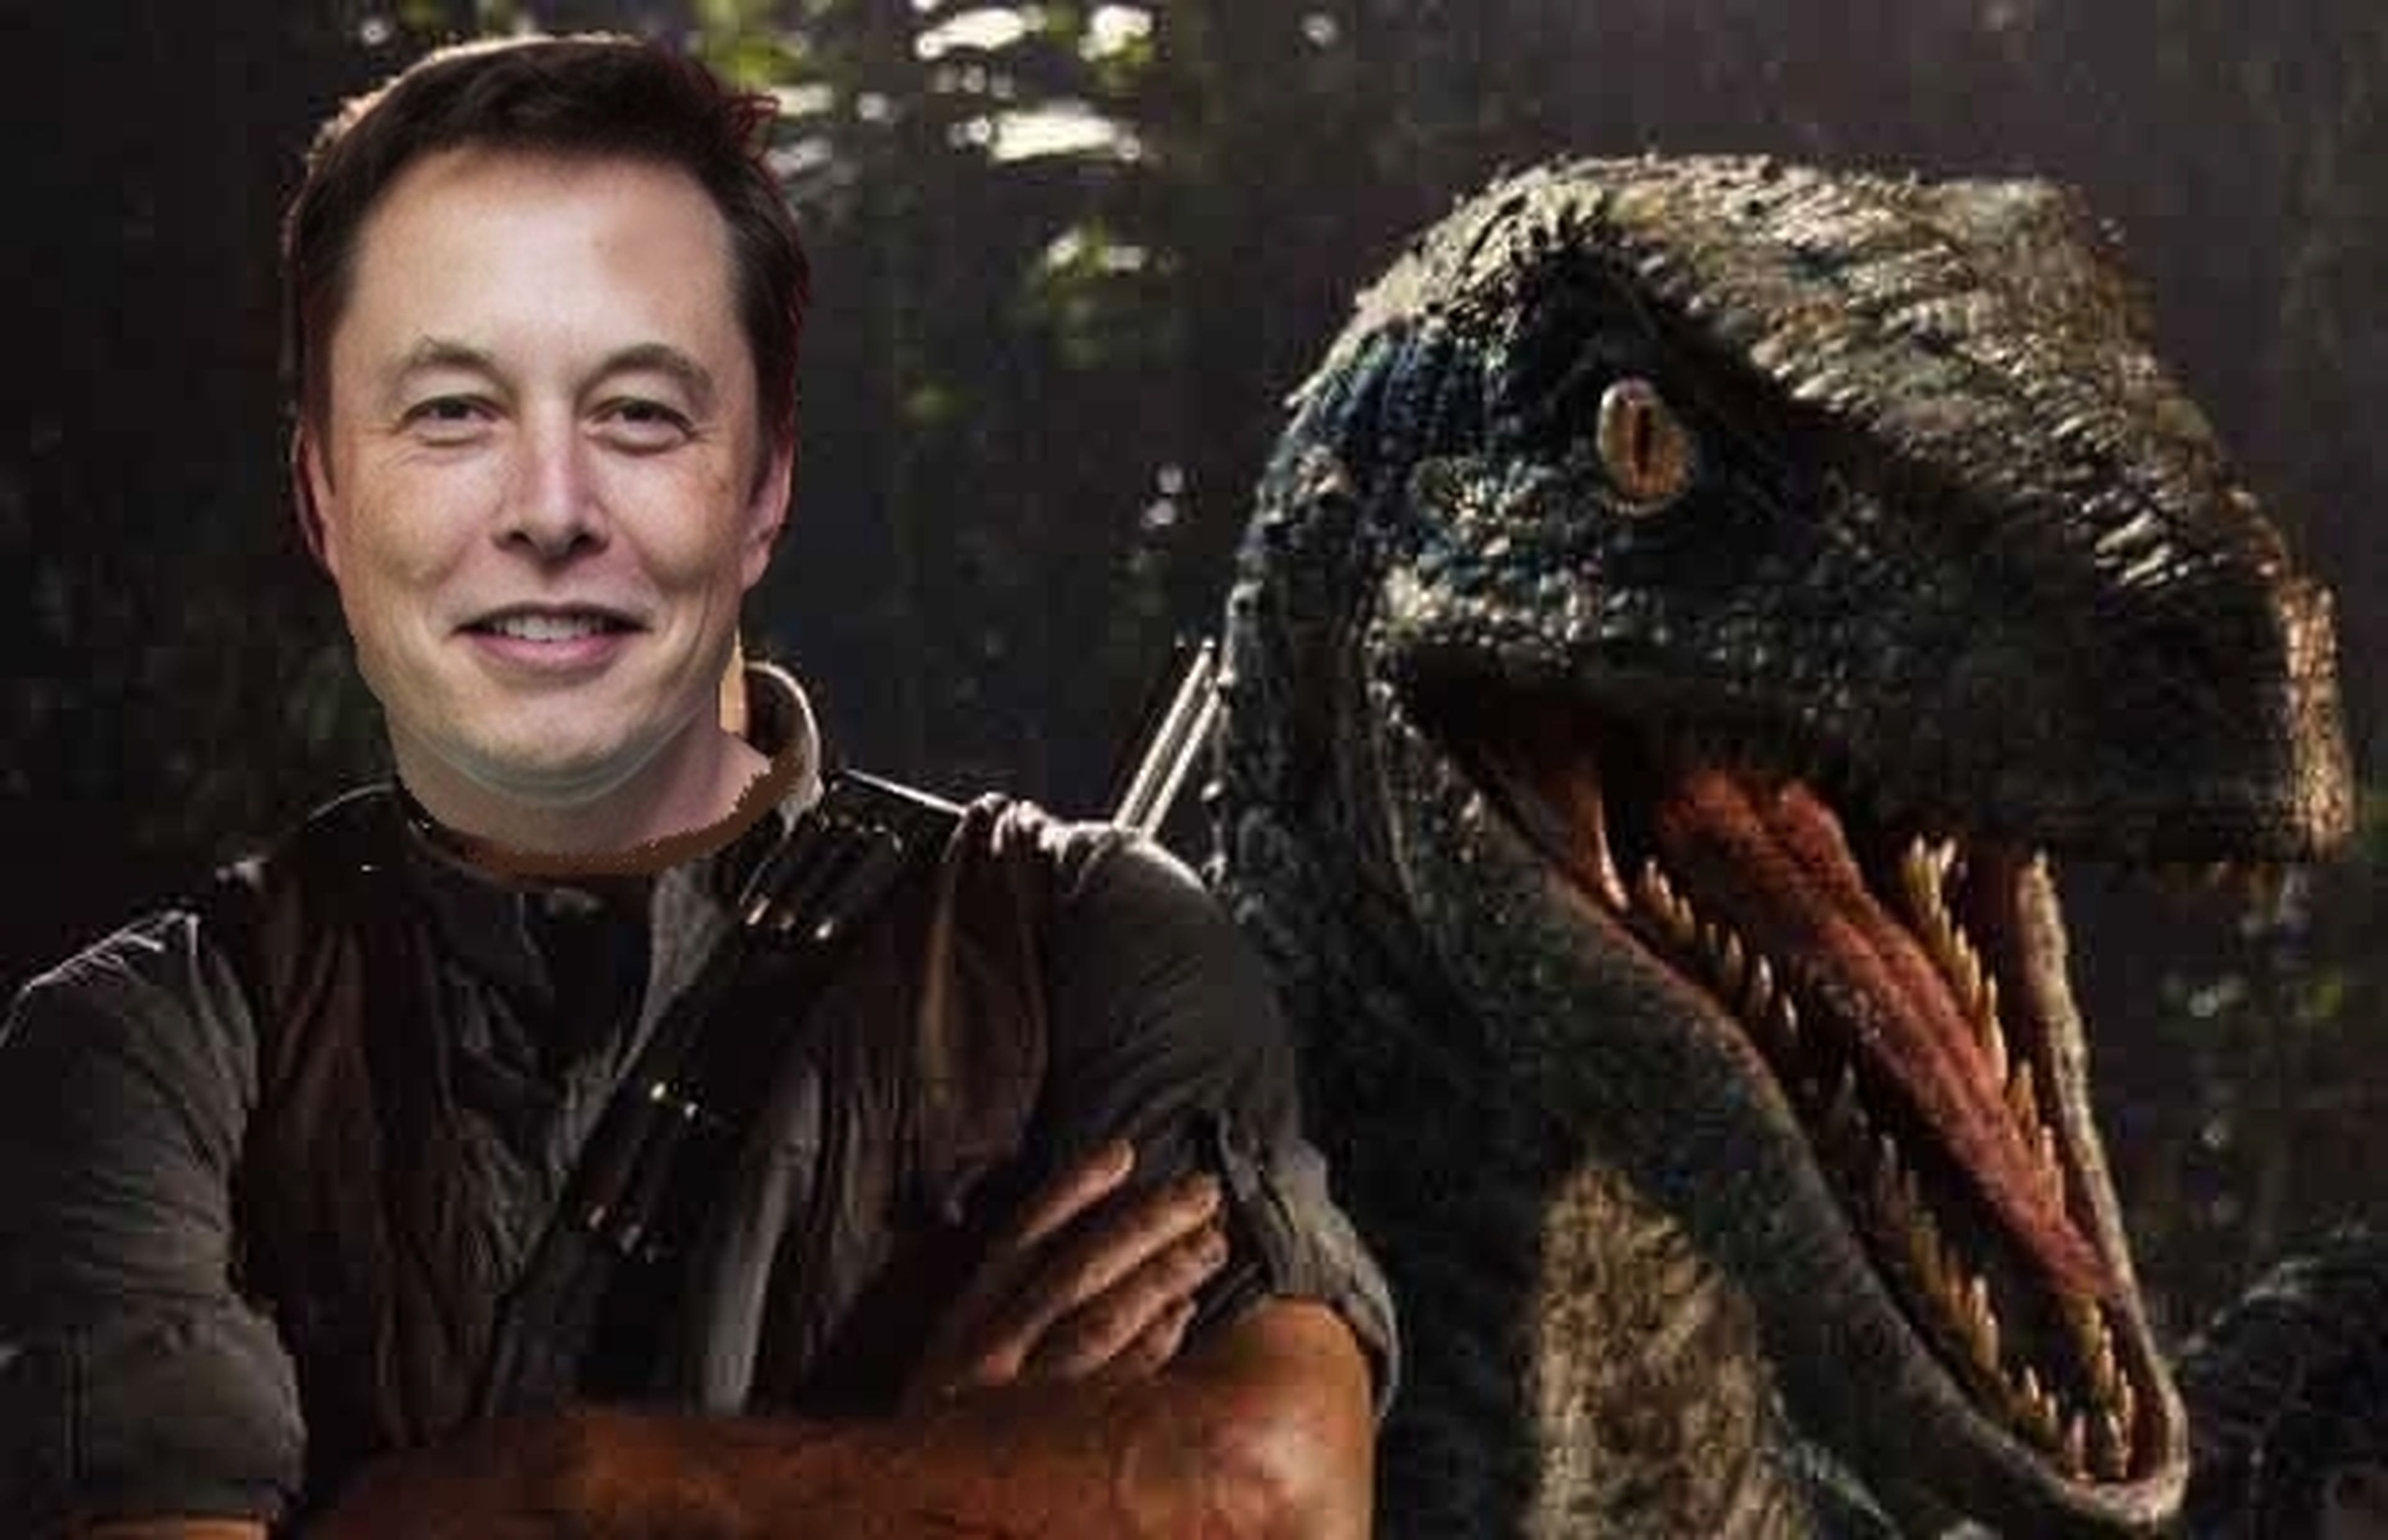 Elon Musk ya podría construir su propio Jurassic Park si quisiera, según el fundador de Neuralink